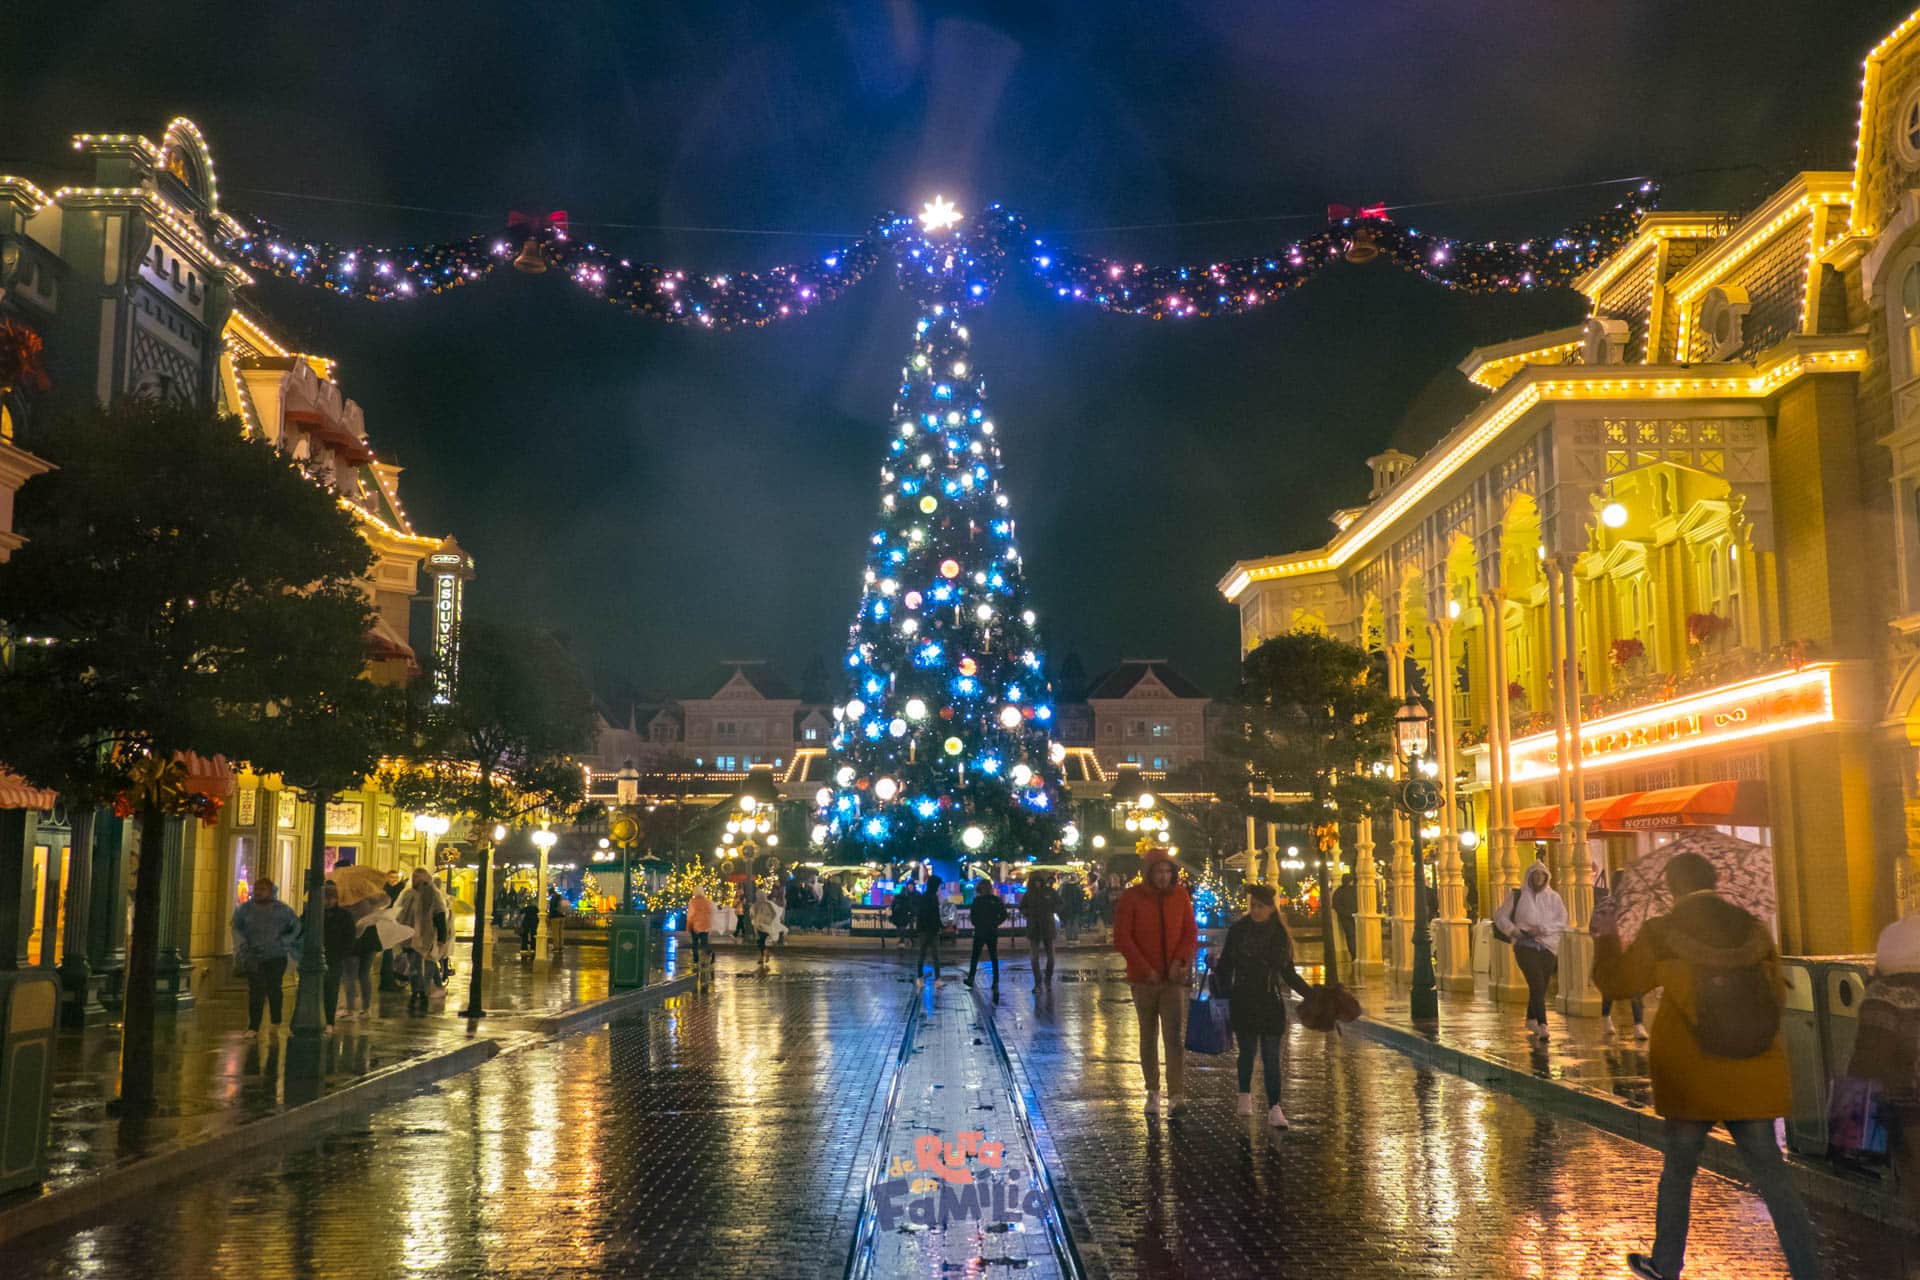 Navidad en Disneyland París